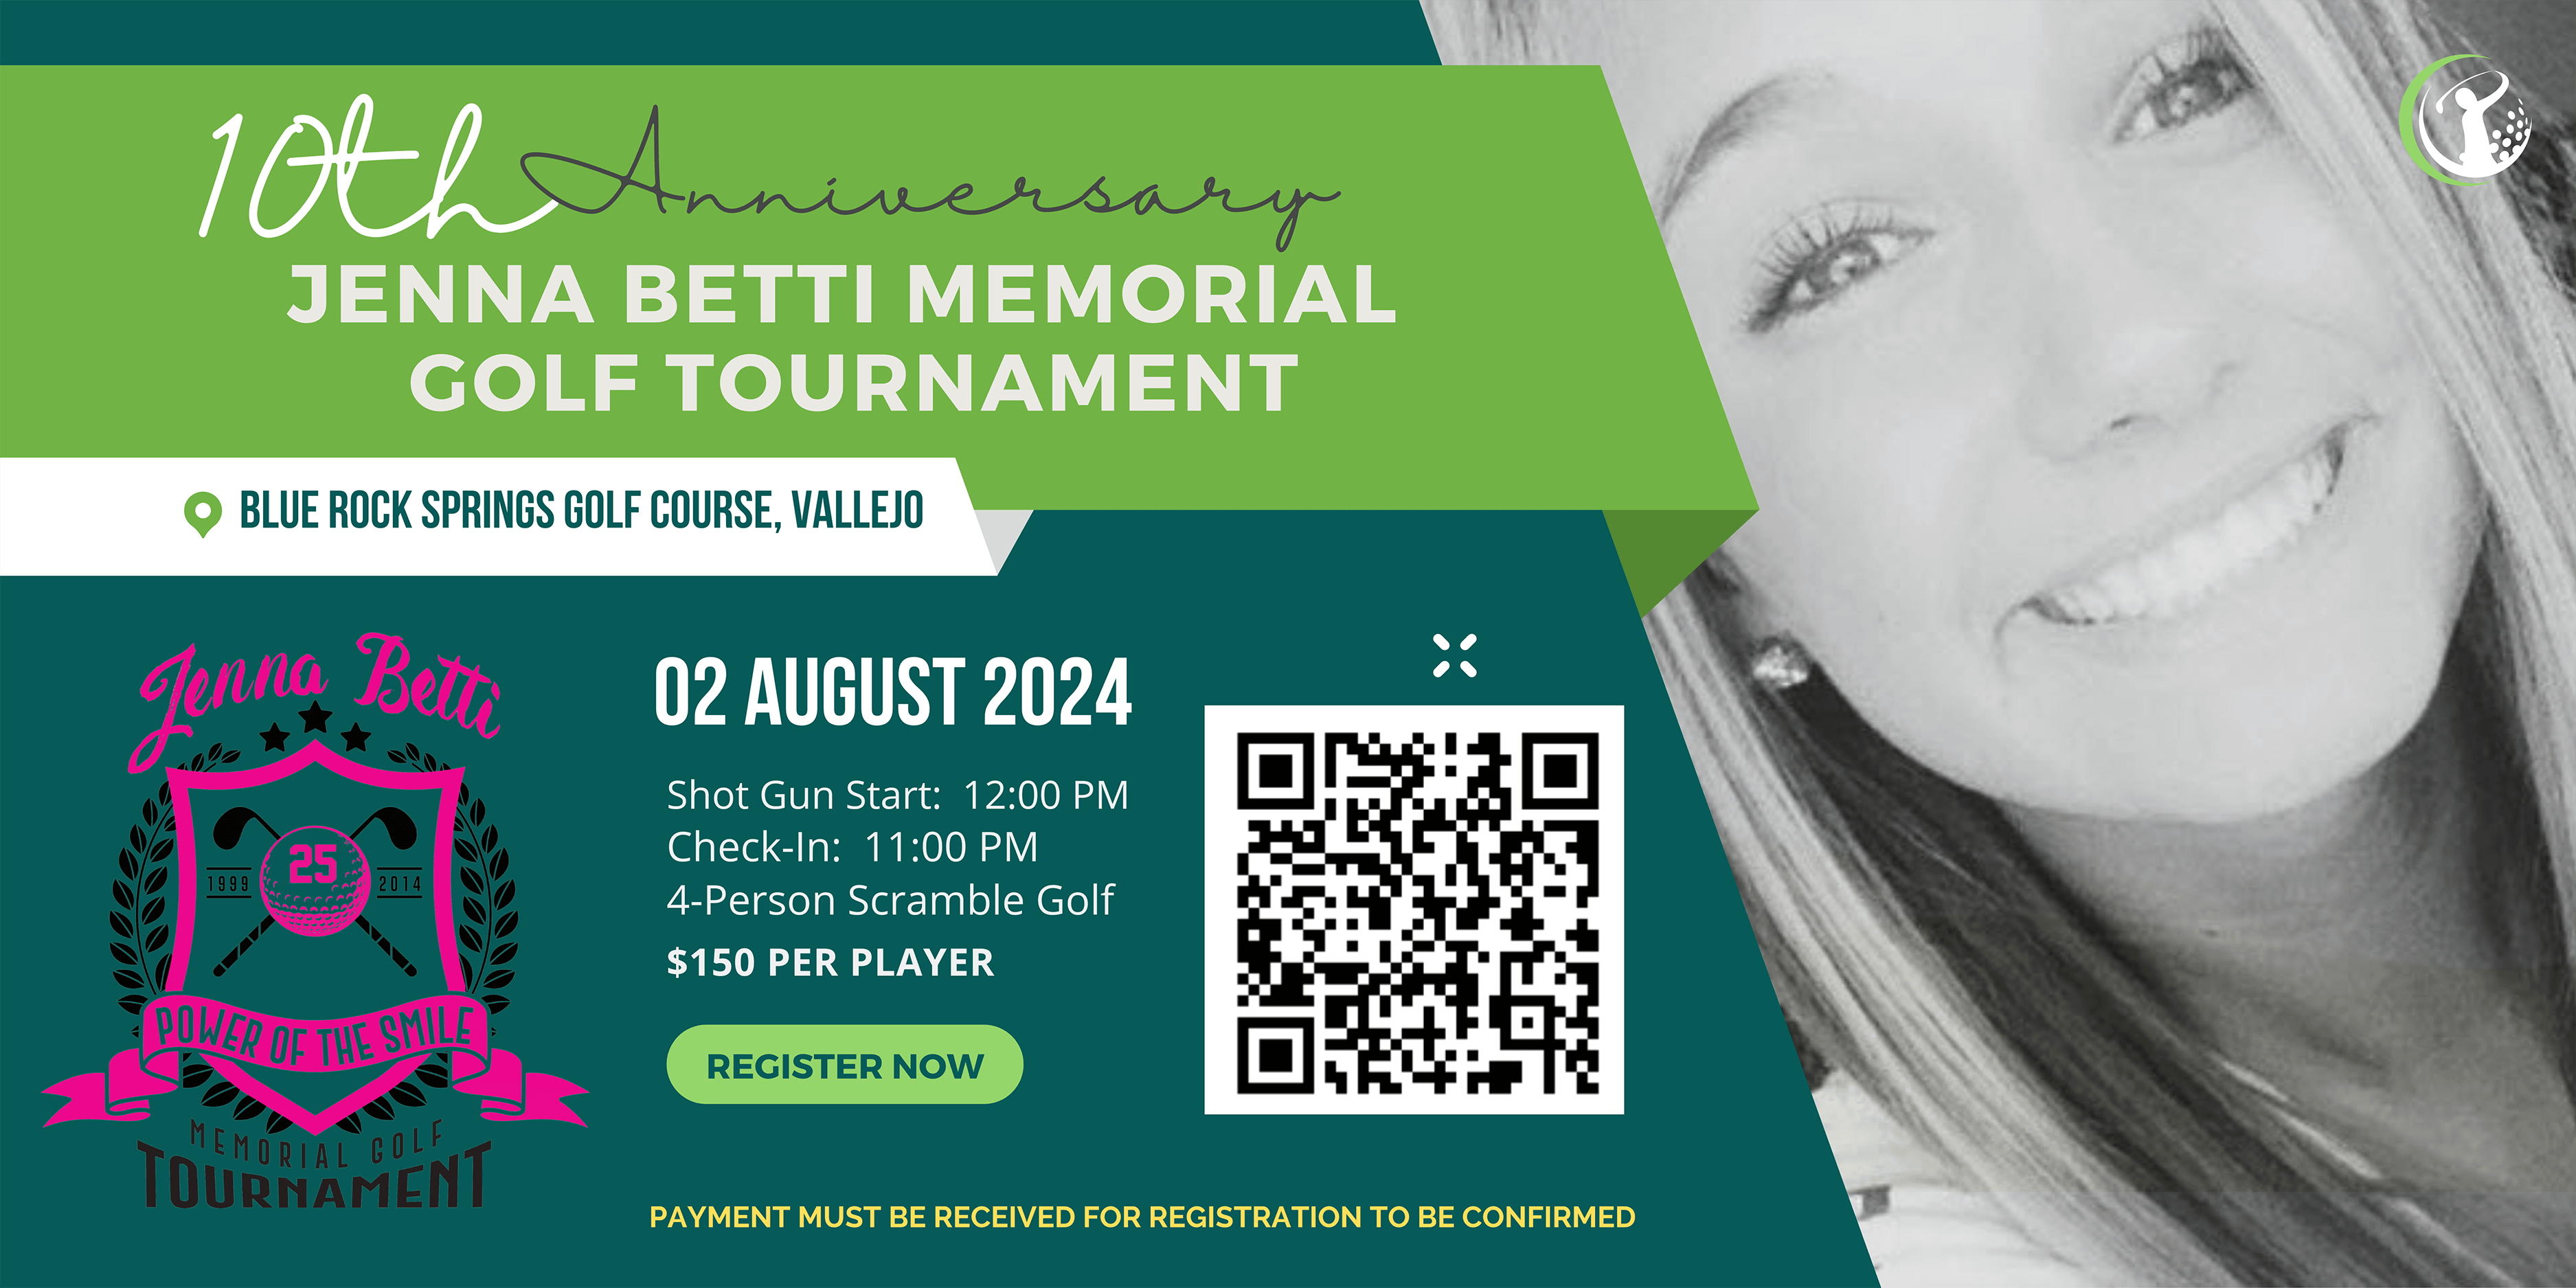 Jenna Betti Memorial Golf Tournament Flyer, August 2, 2024